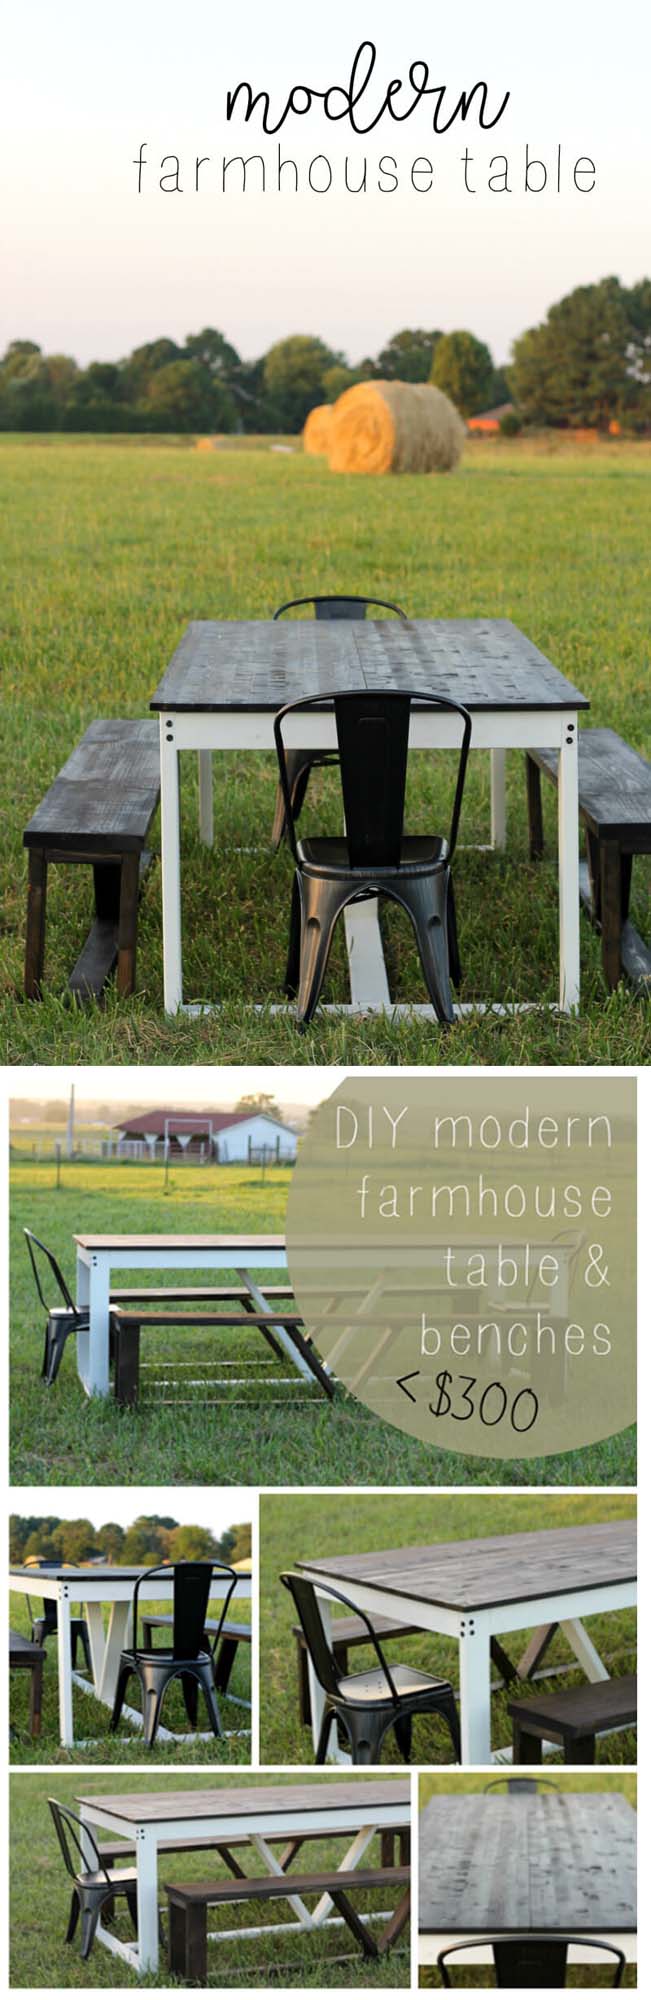 How to Build a Modern DIY Farmhouse Table #diy #farmhouse #table #decorhomeideas